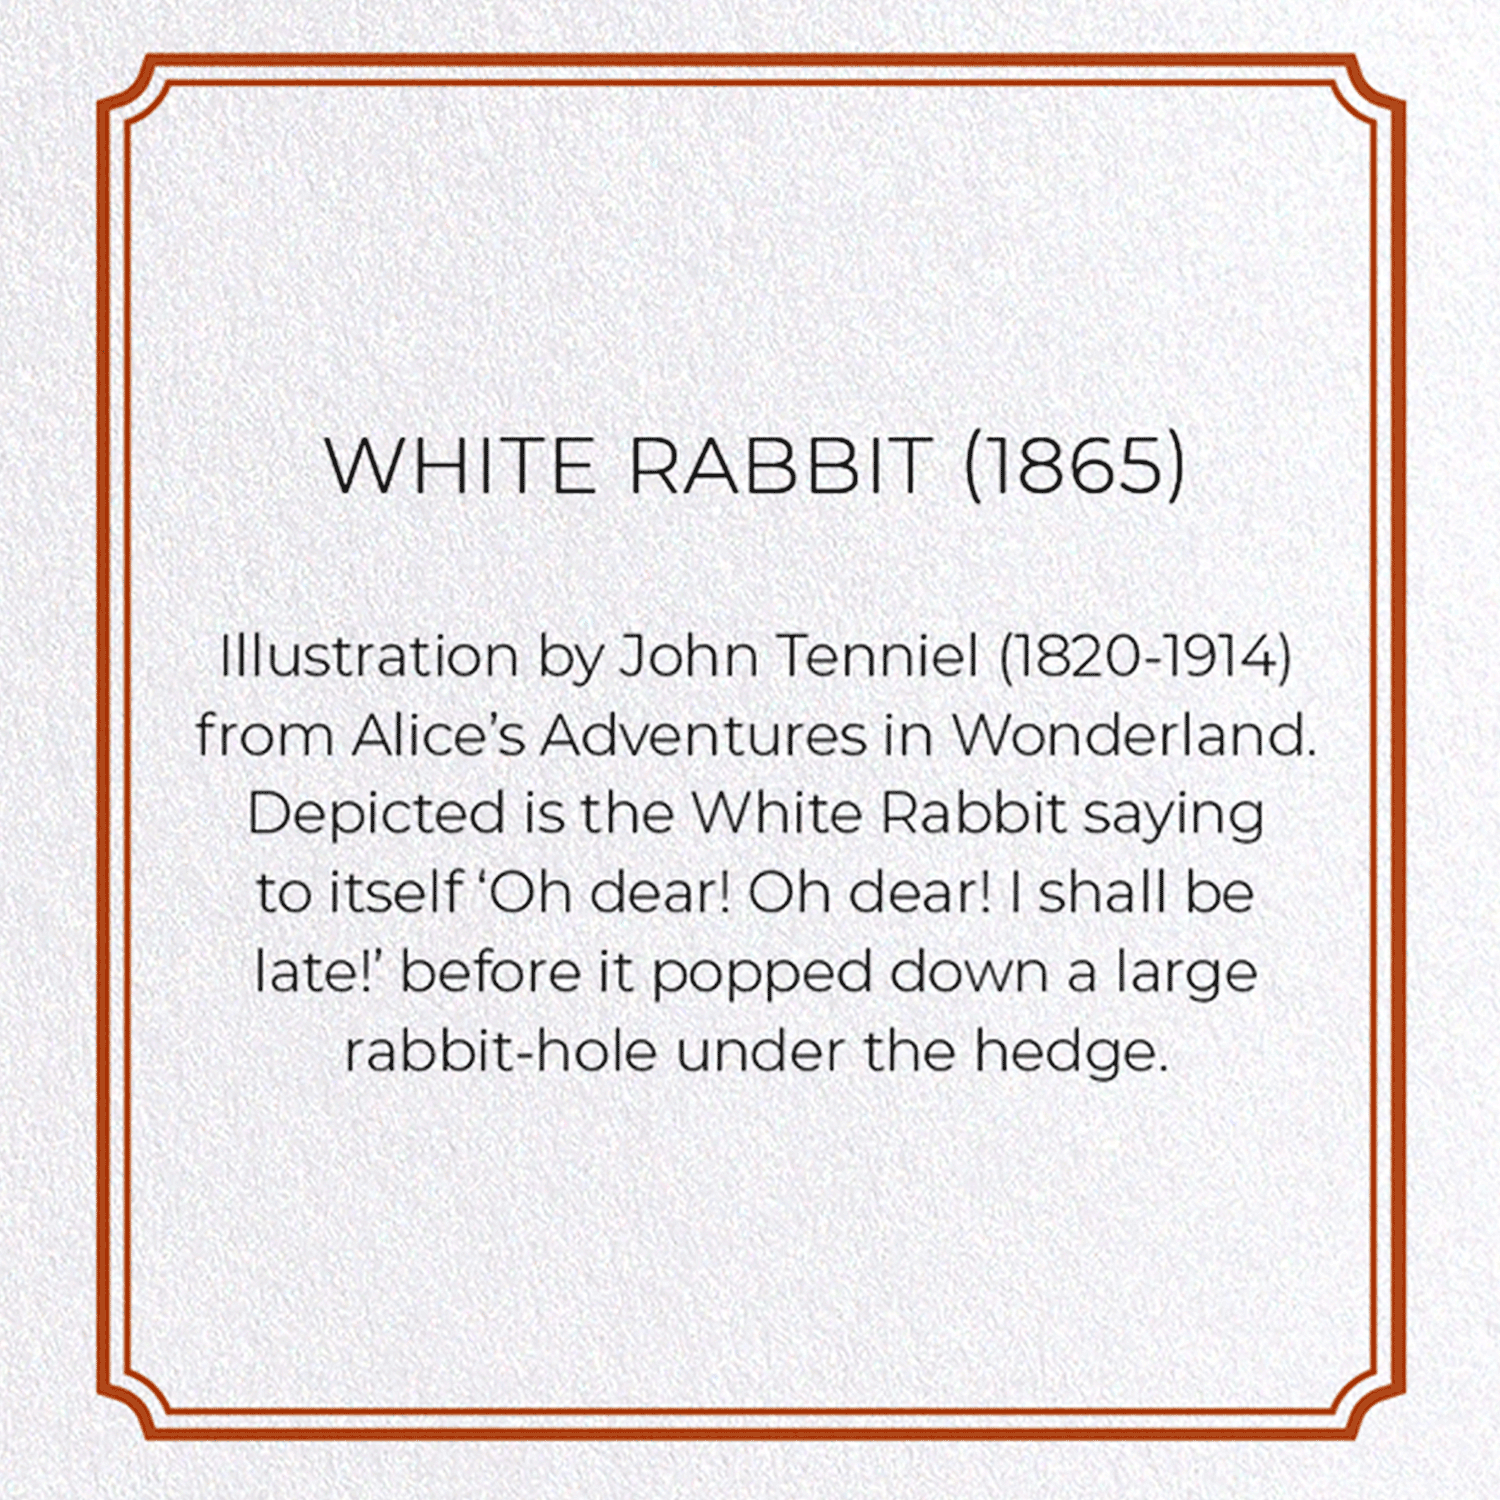 WHITE RABBIT (1865)